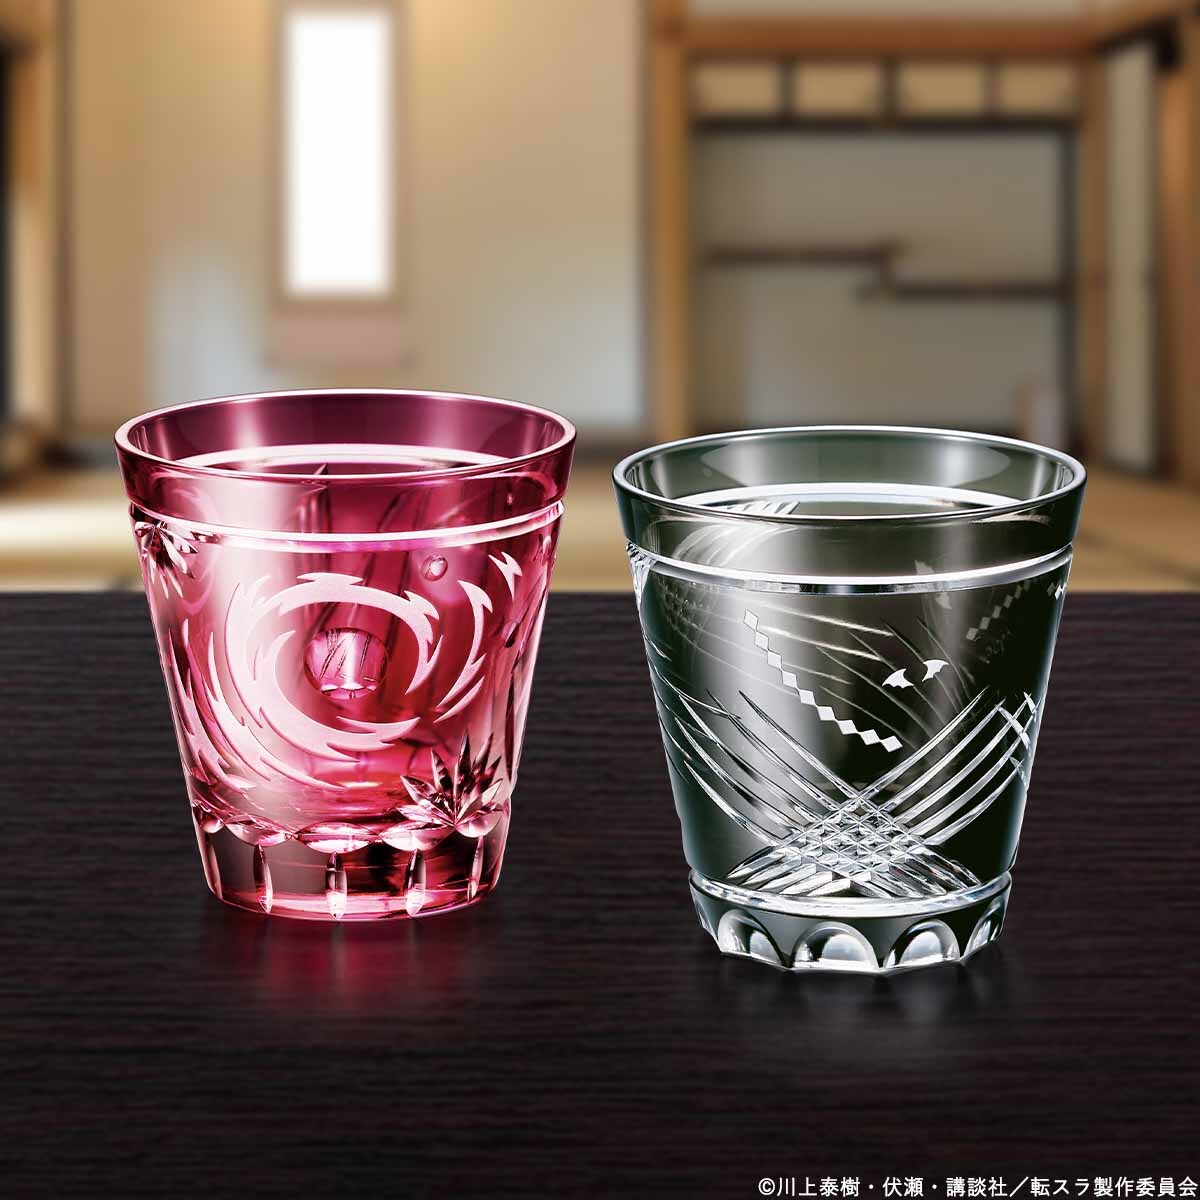 店名転生したらスライムだった件 リムル 江戸切子 グラス 限定300個 ガラス コップ 20220207 工芸ガラス